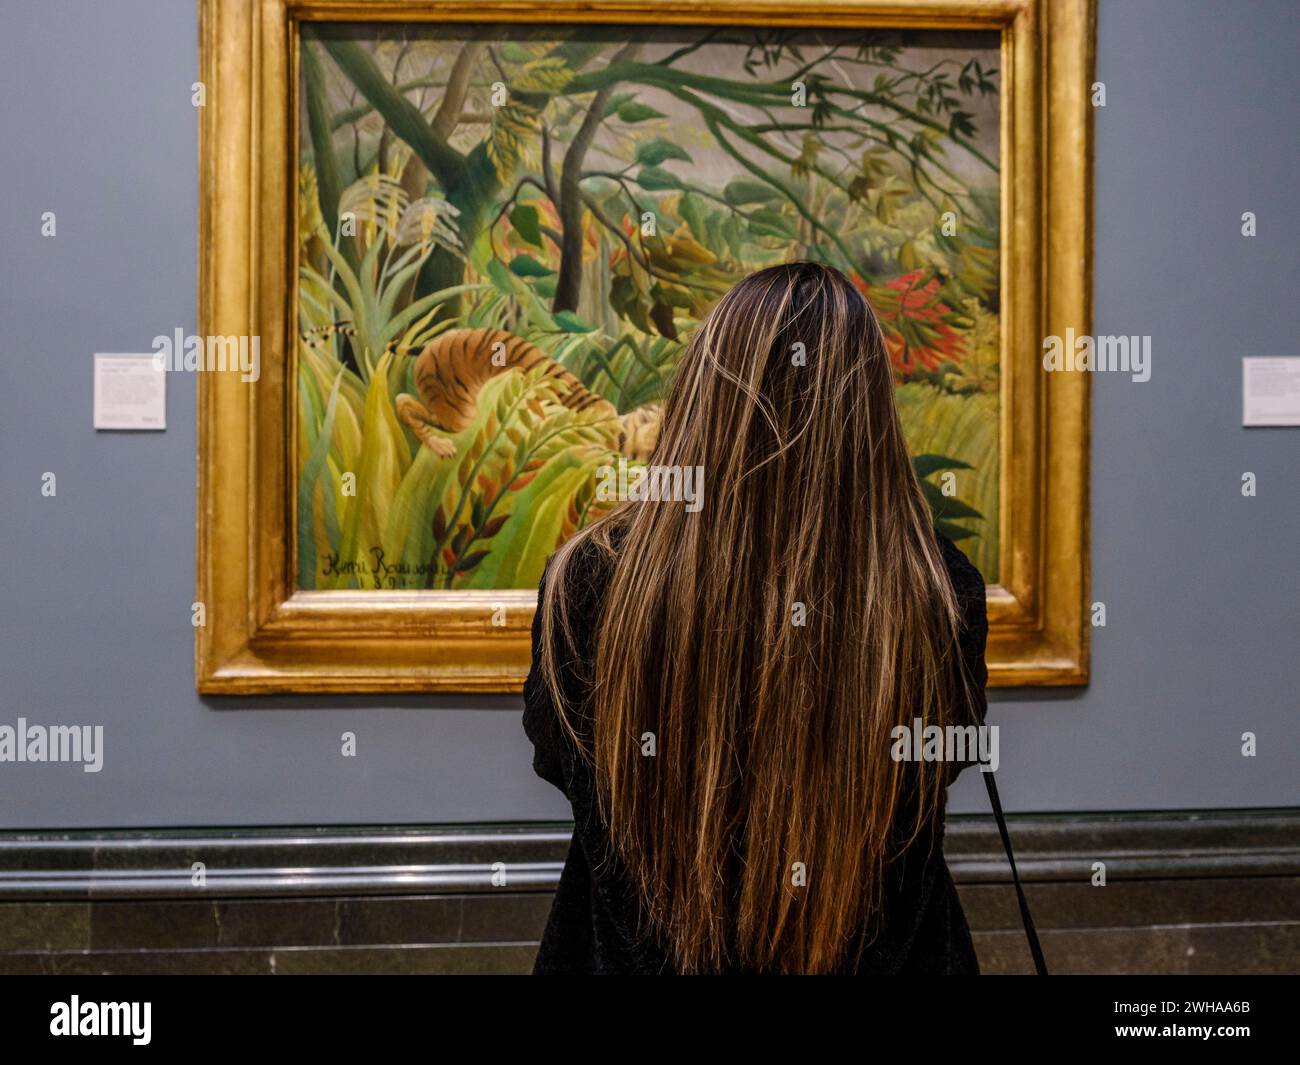 Femme aux cheveux longs devant la peinture Henri rousseau, surprise, 1891, huile sur toile, Galerie nationale, Londres, Angleterre, Grande-Bretagne Banque D'Images